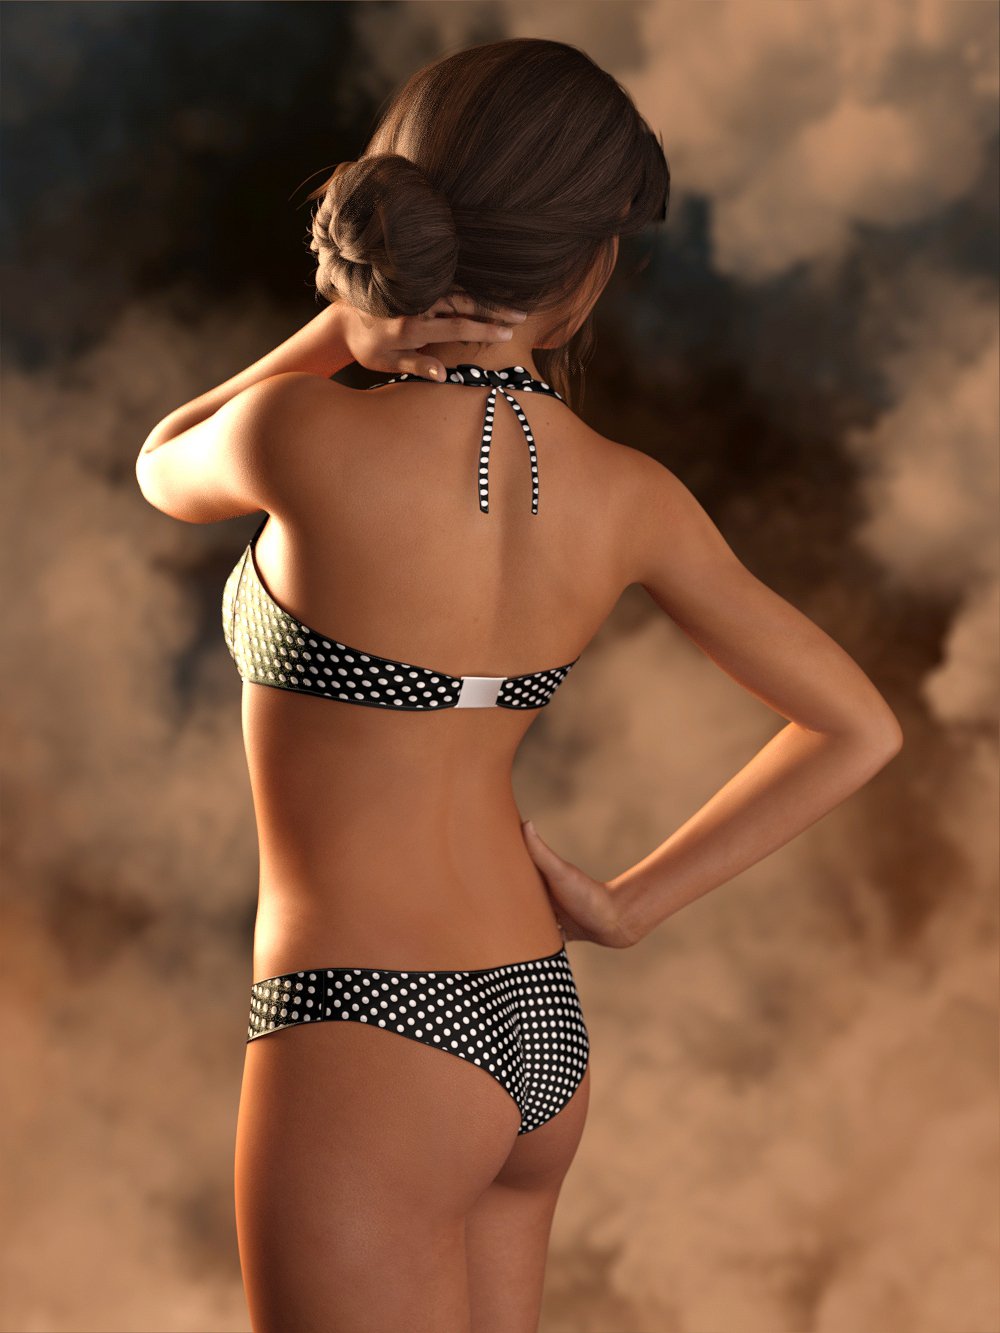 RW Triangle Bikini for Genesis 8 Female(s) by: Renderwelten, 3D Models by Daz 3D